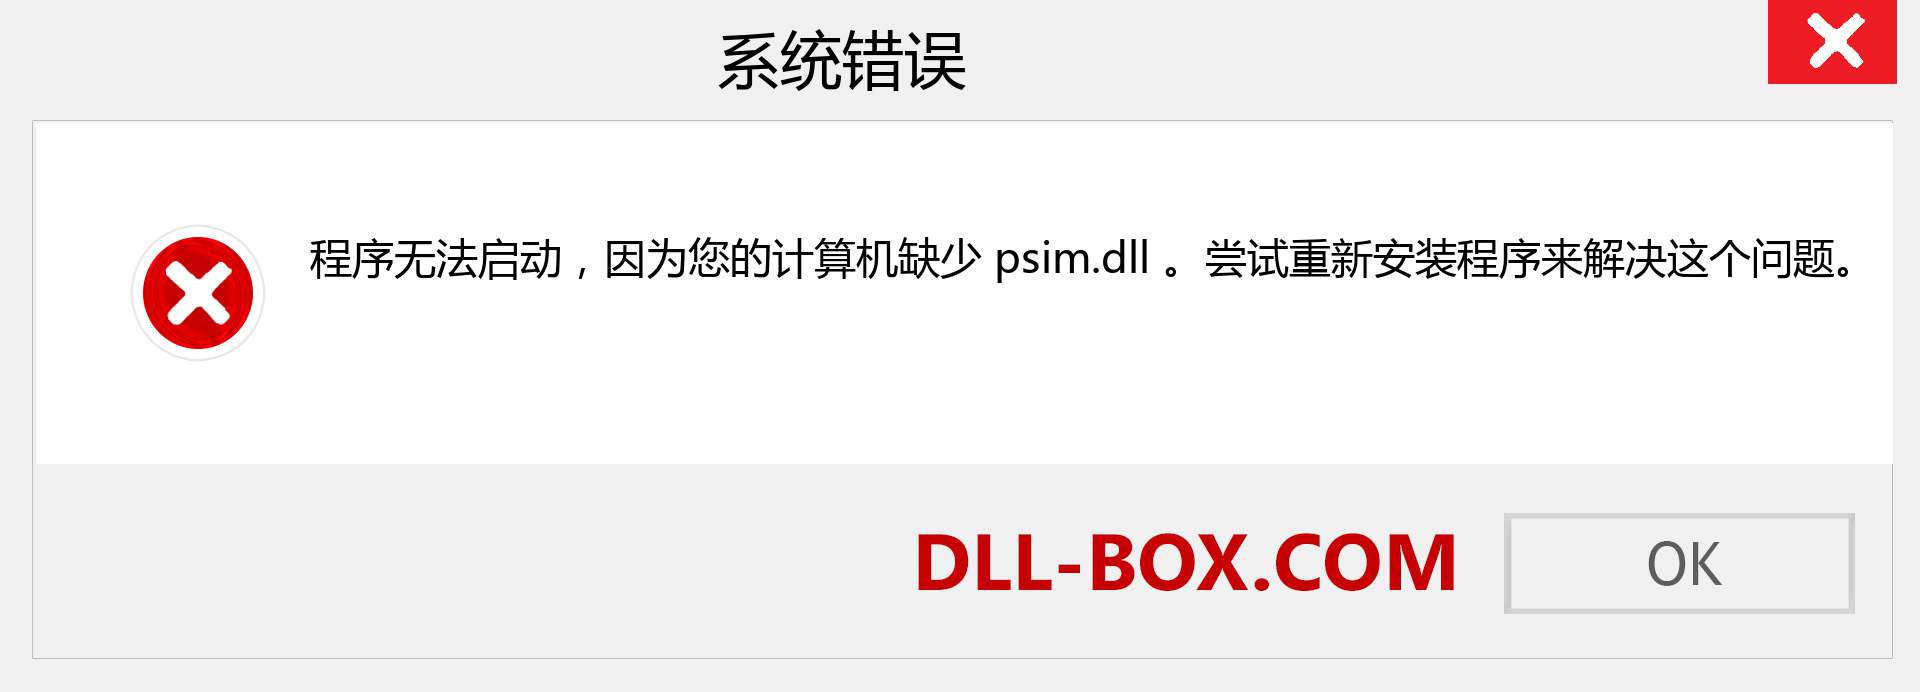 psim.dll 文件丢失？。 适用于 Windows 7、8、10 的下载 - 修复 Windows、照片、图像上的 psim dll 丢失错误